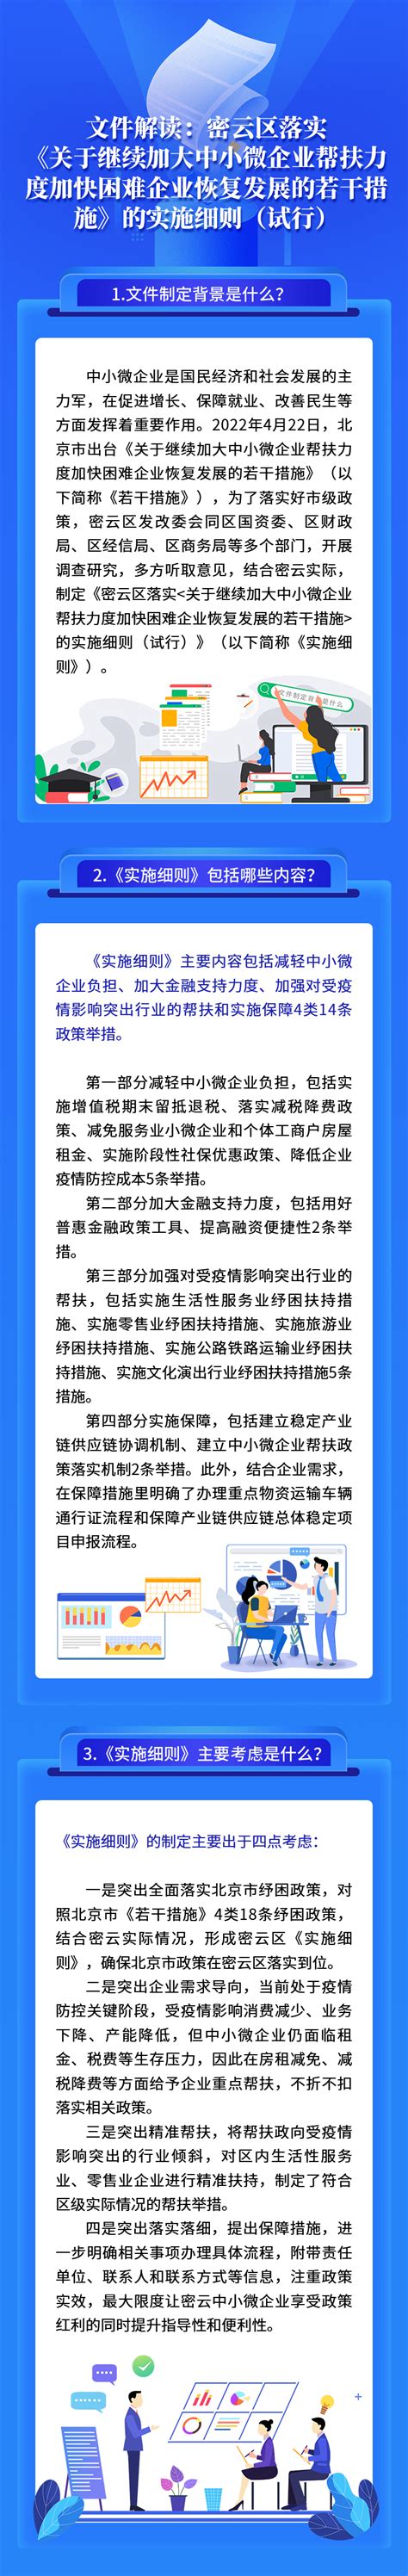 密云概况_首都之窗_北京市人民政府门户网站